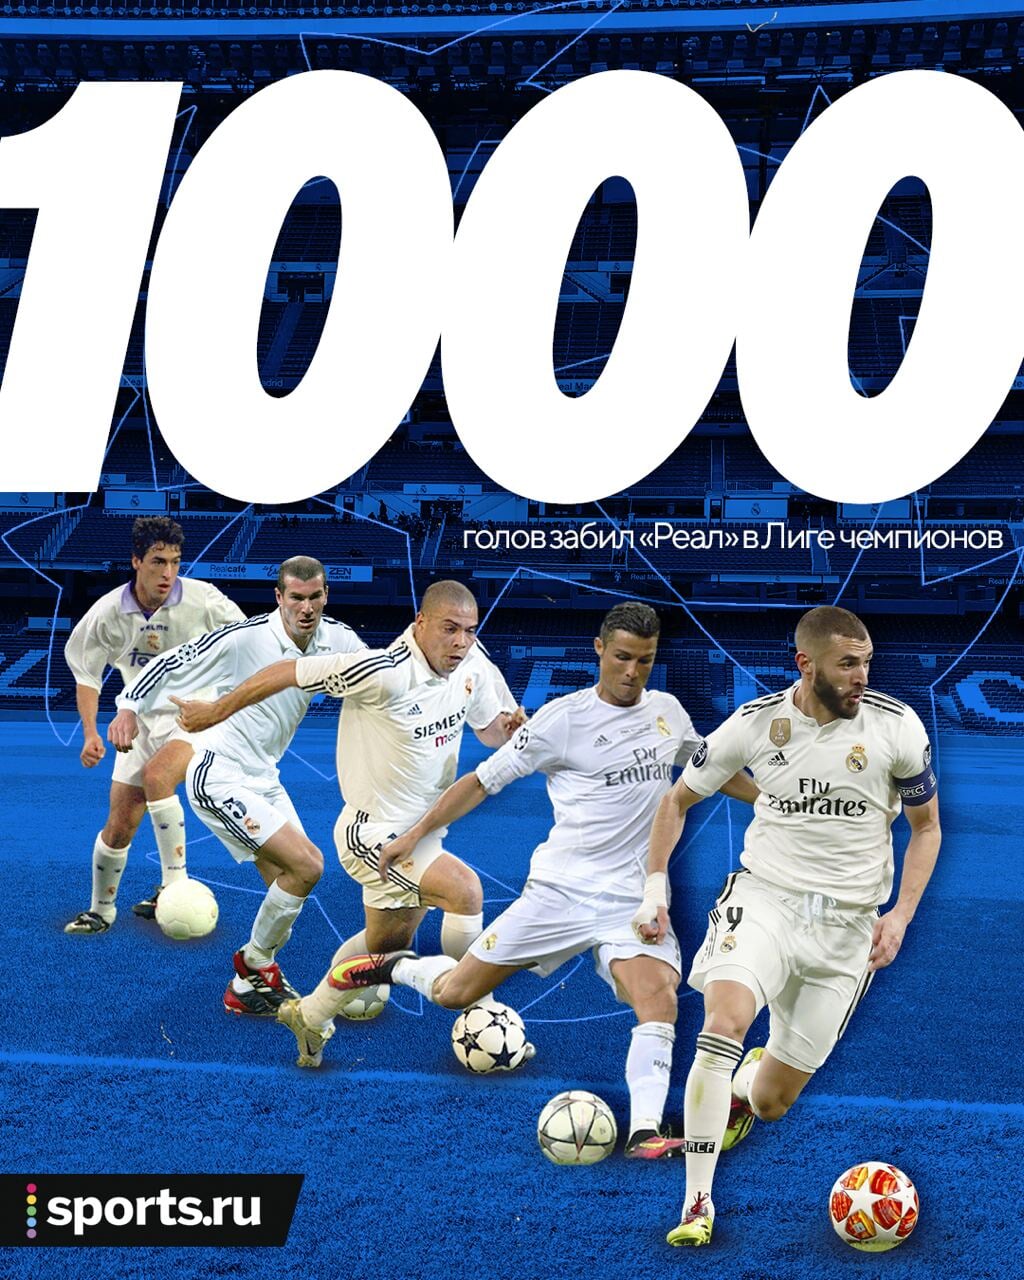 Реал» первым забил 1000 голов в ЛЧ. Юбилейный у Бензема, от одного Роналду  – больше 10% - Твин Пикс - Блоги - Sports.ru